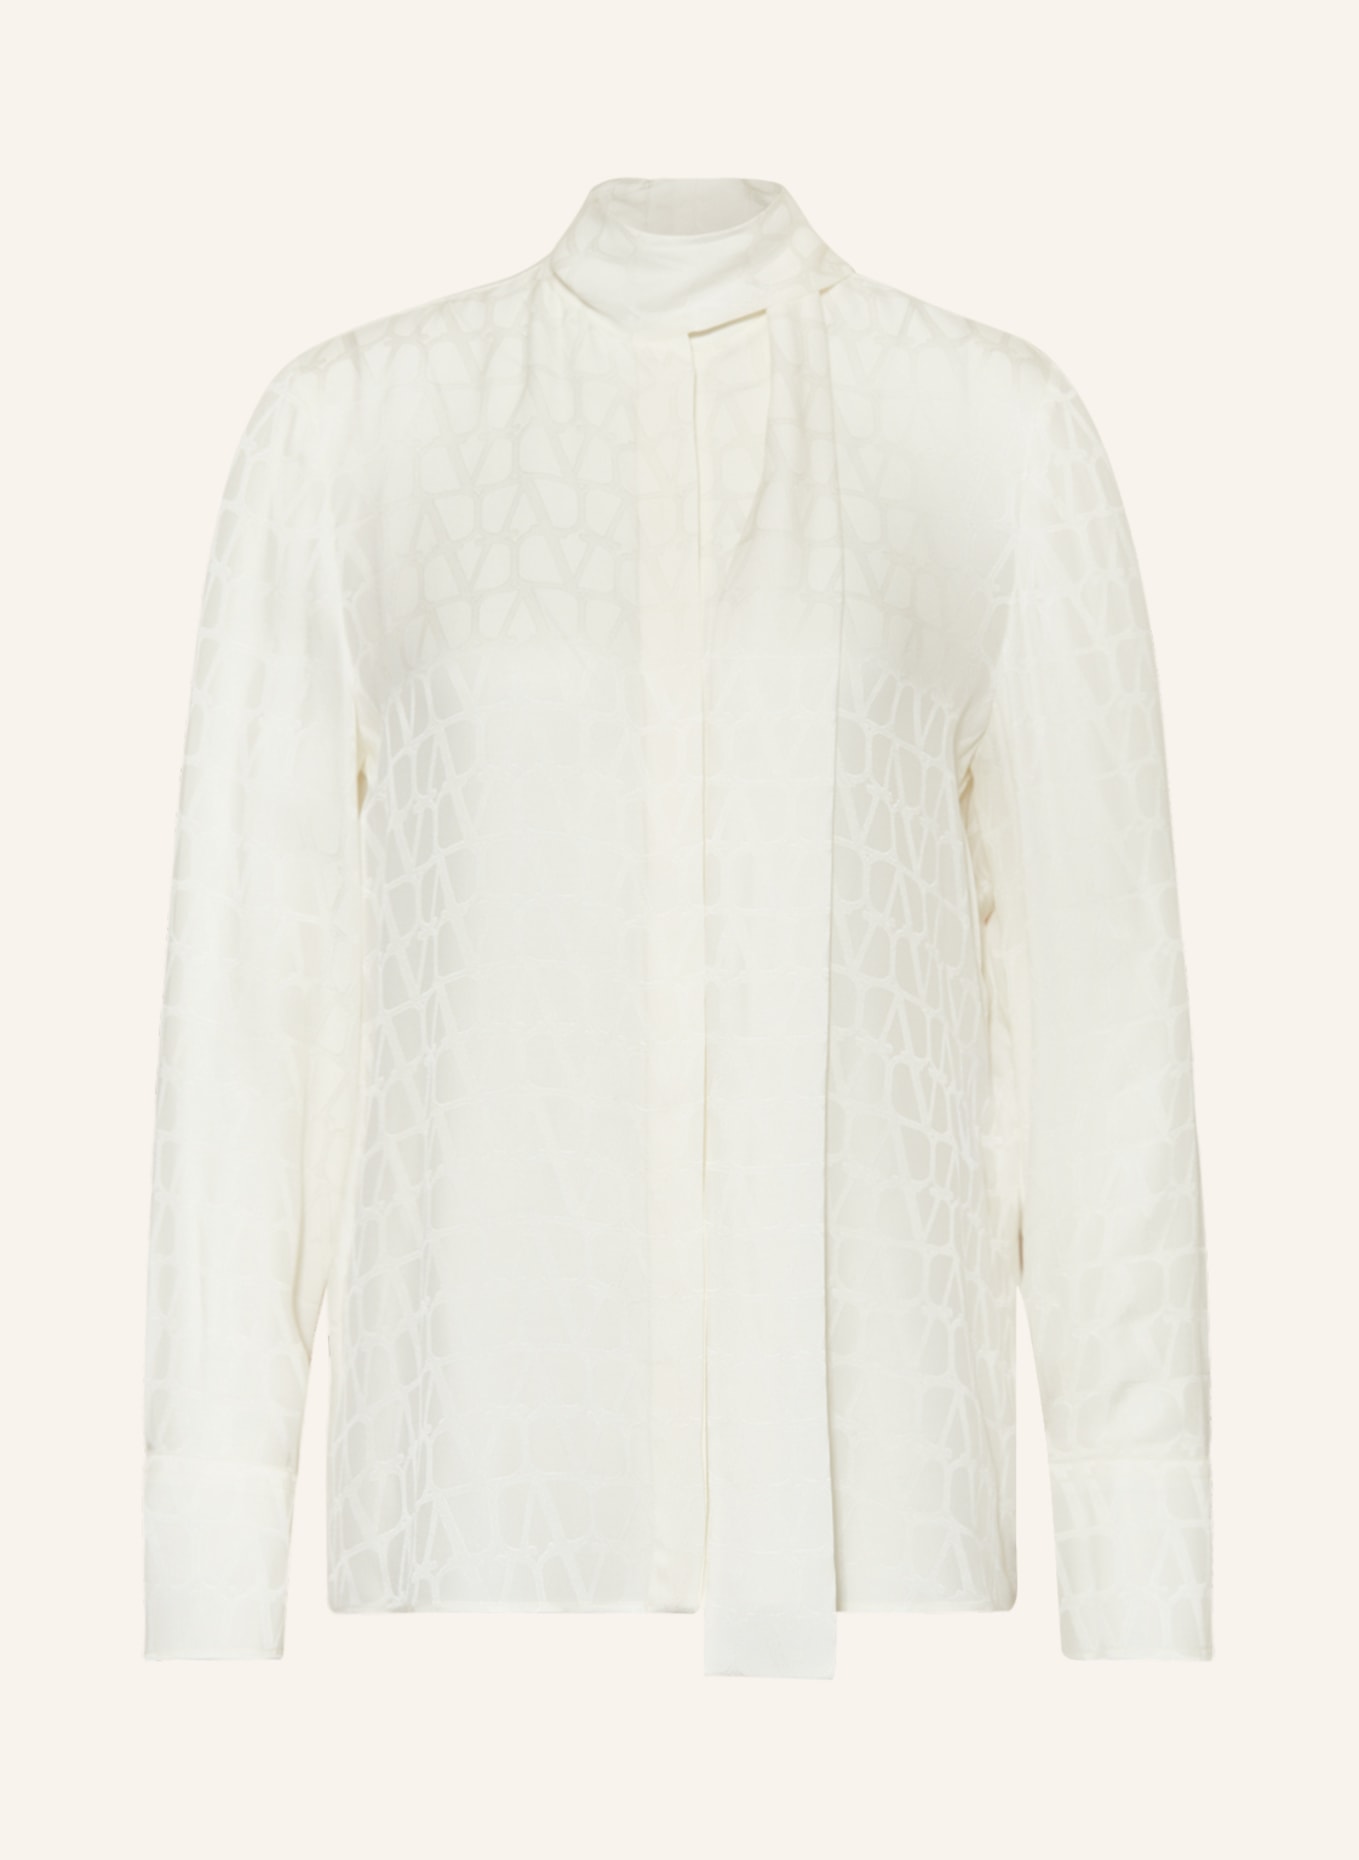 VALENTINO Bow-tie blouse TOILE ICONOGRAPHE in silk, Color: ECRU (Image 1)